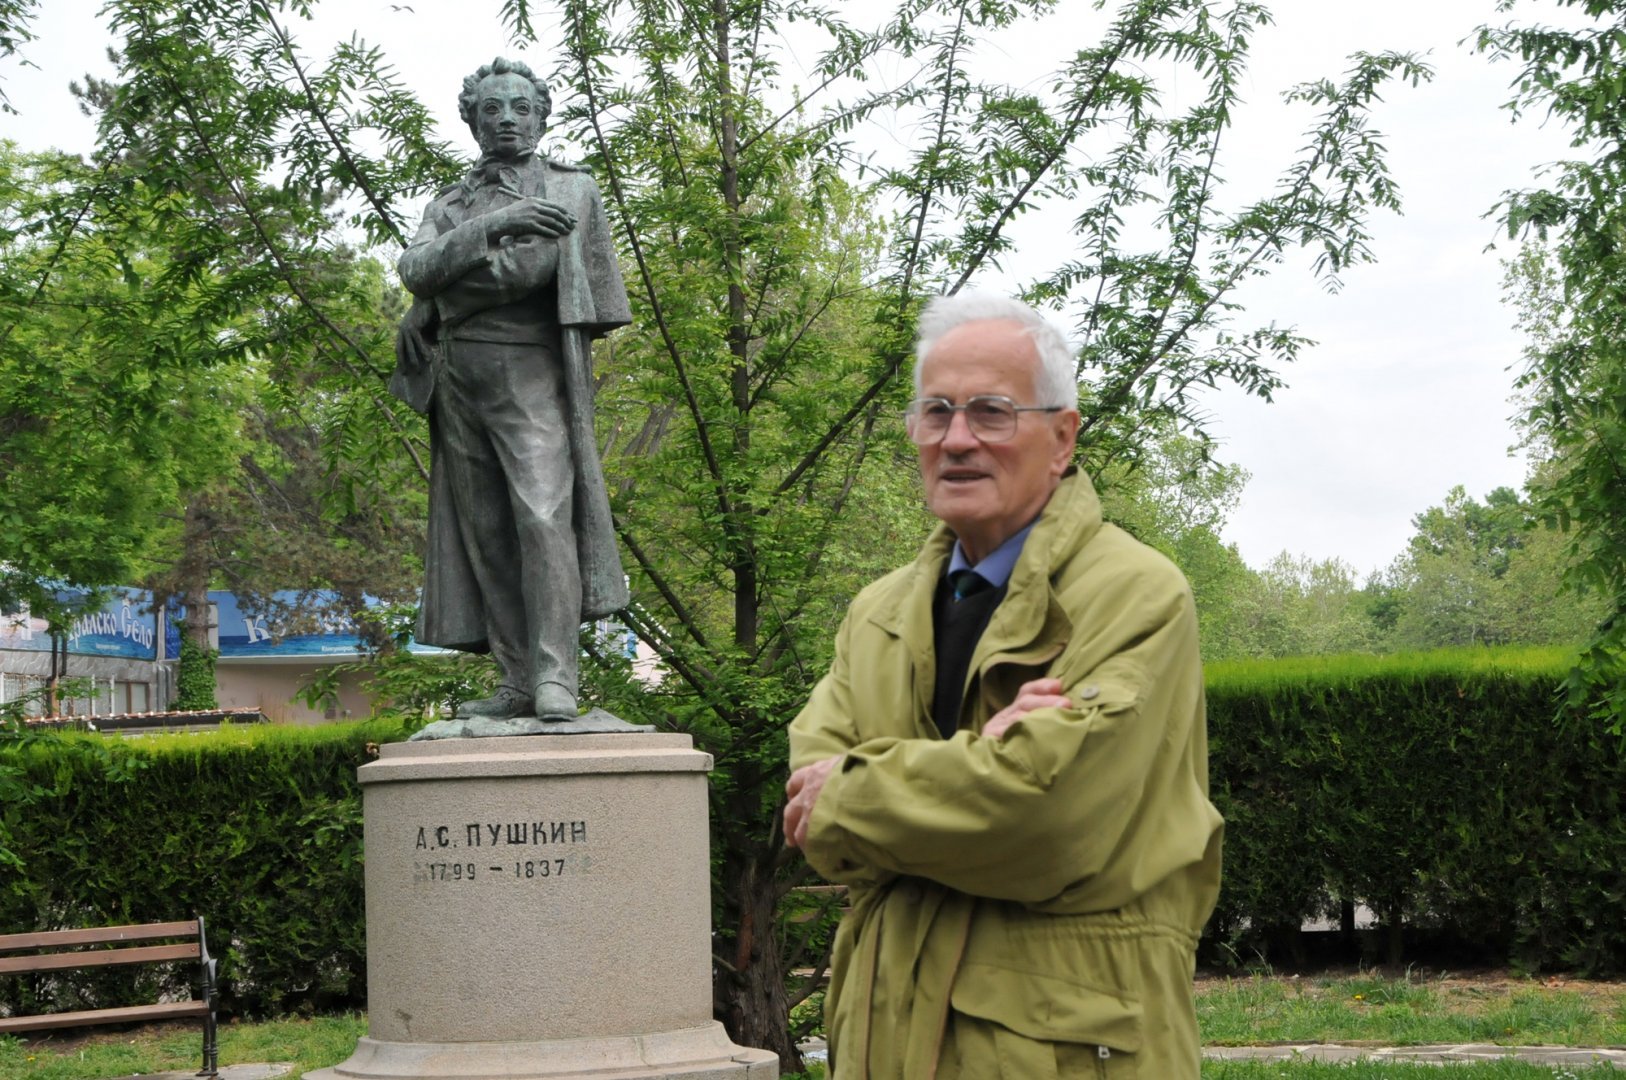 Велин Задгорски се върна в Бургас преди време, заради паметника на своя баща - Петко Задгорски. Снимки Архив Черноморие-бг